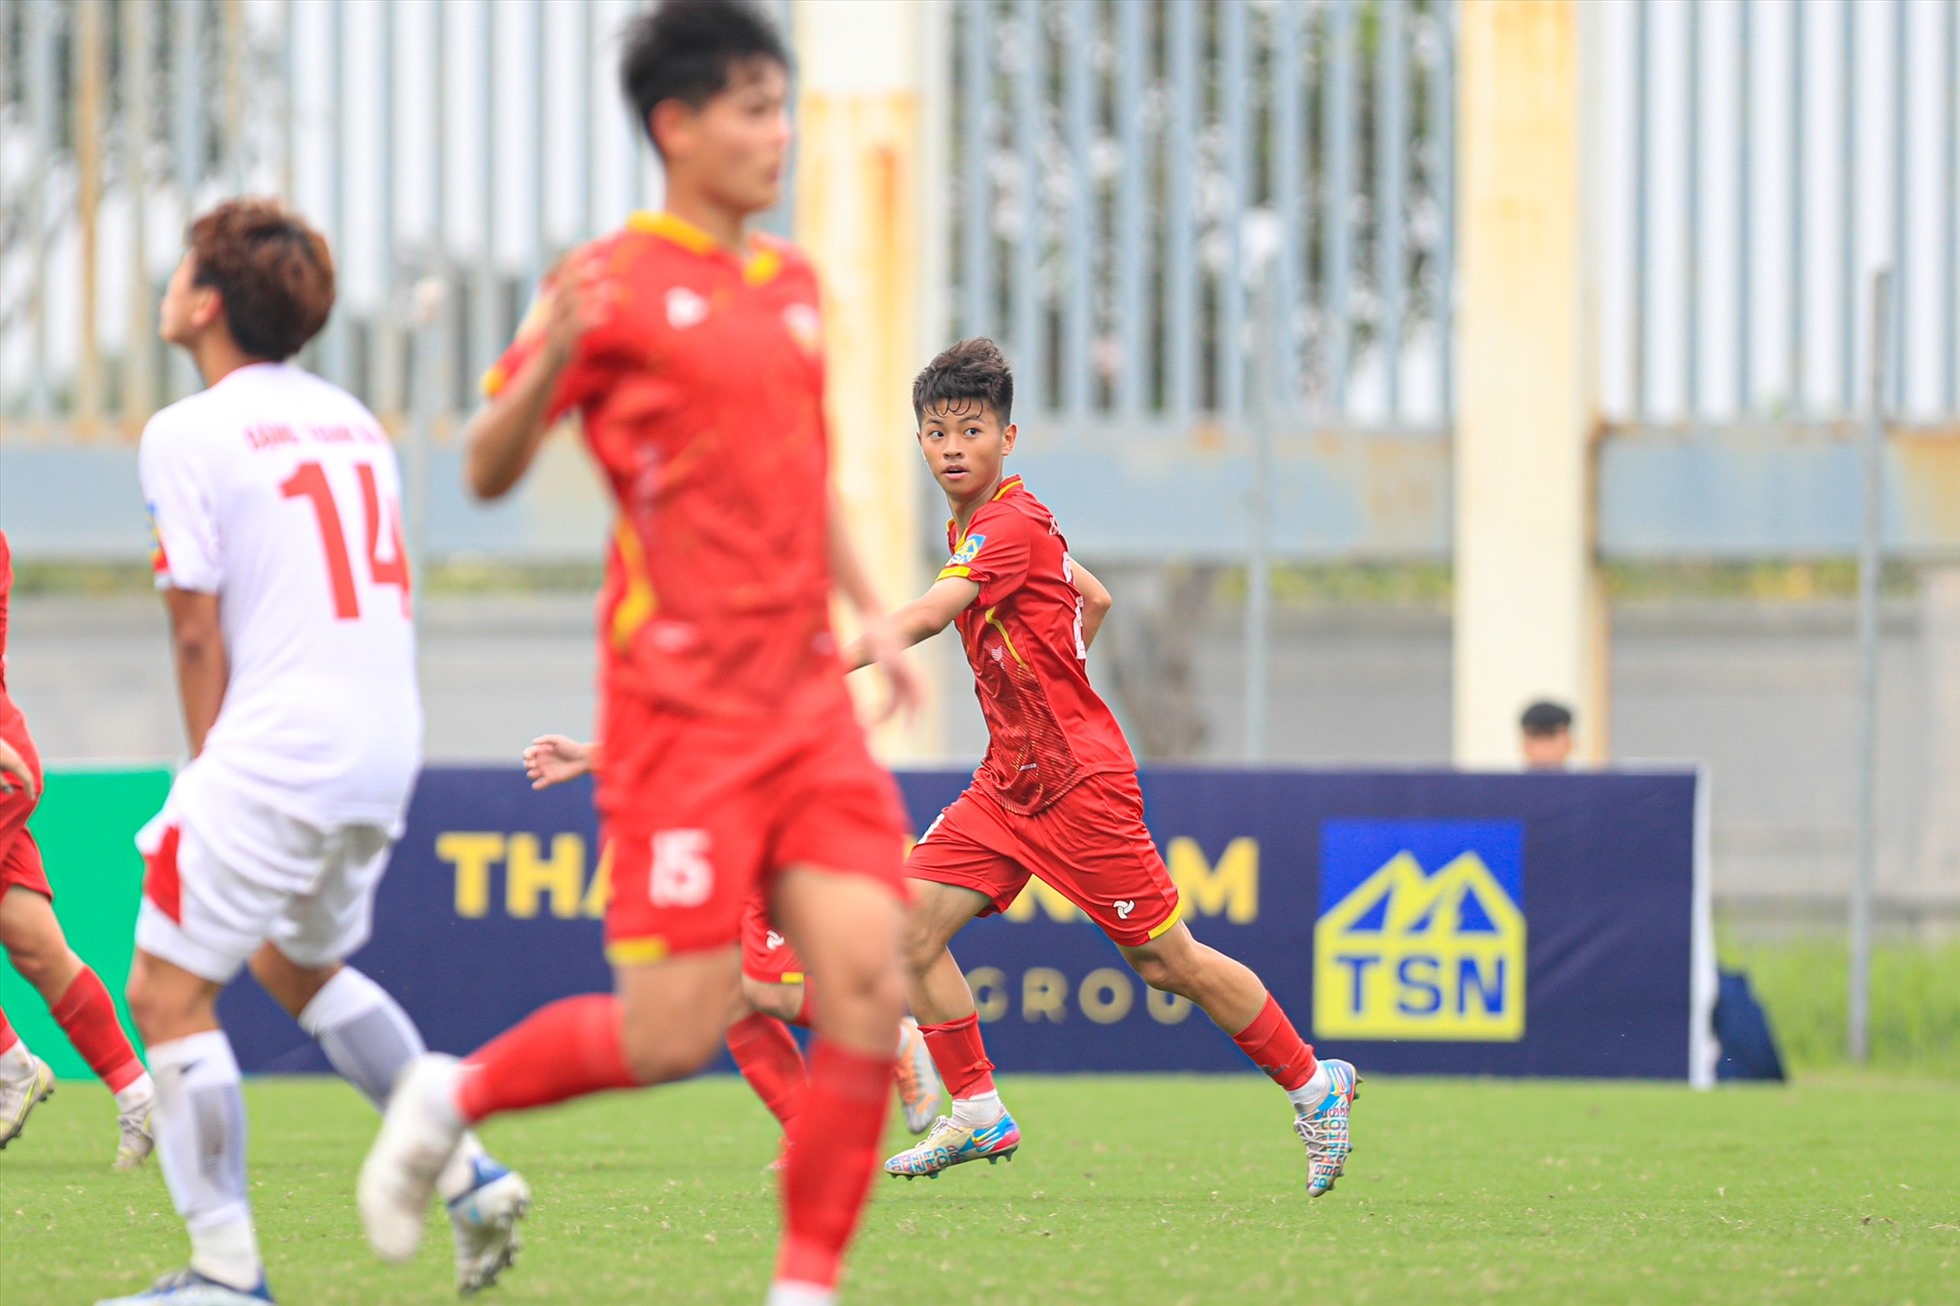 Những nỗ lực giúp U17 Hồng Lĩnh Hà Tĩnh ghi được 2 bàn và chấp nhận để thua với tỉ số 2-4. Ảnh: Minh Dân